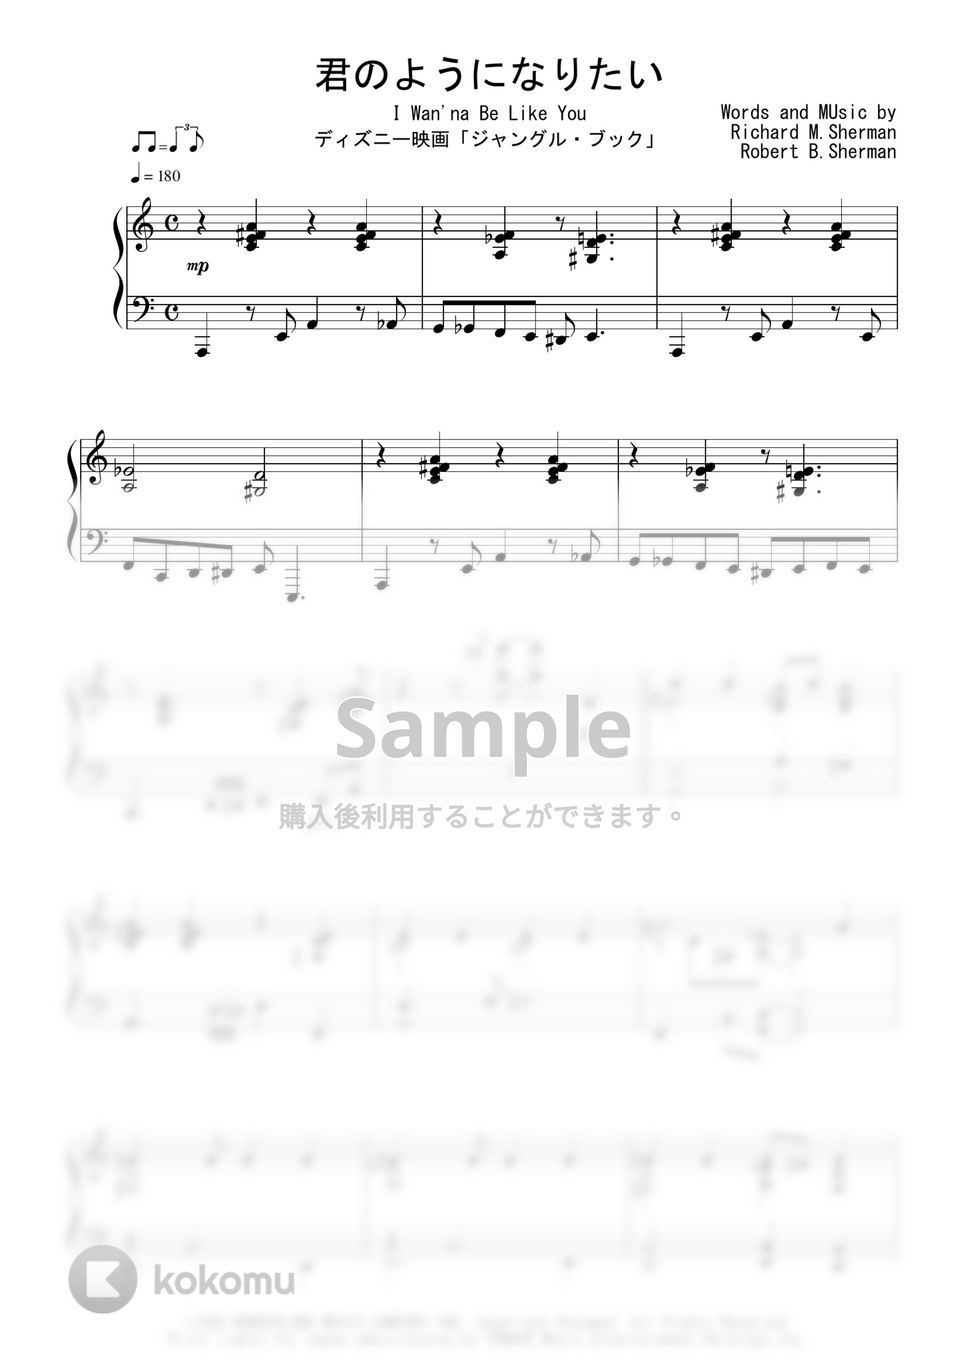 ディズニー映画『ジャングル・ブック』OST - 君のようになりたい (Jazz Ver.) by Peony